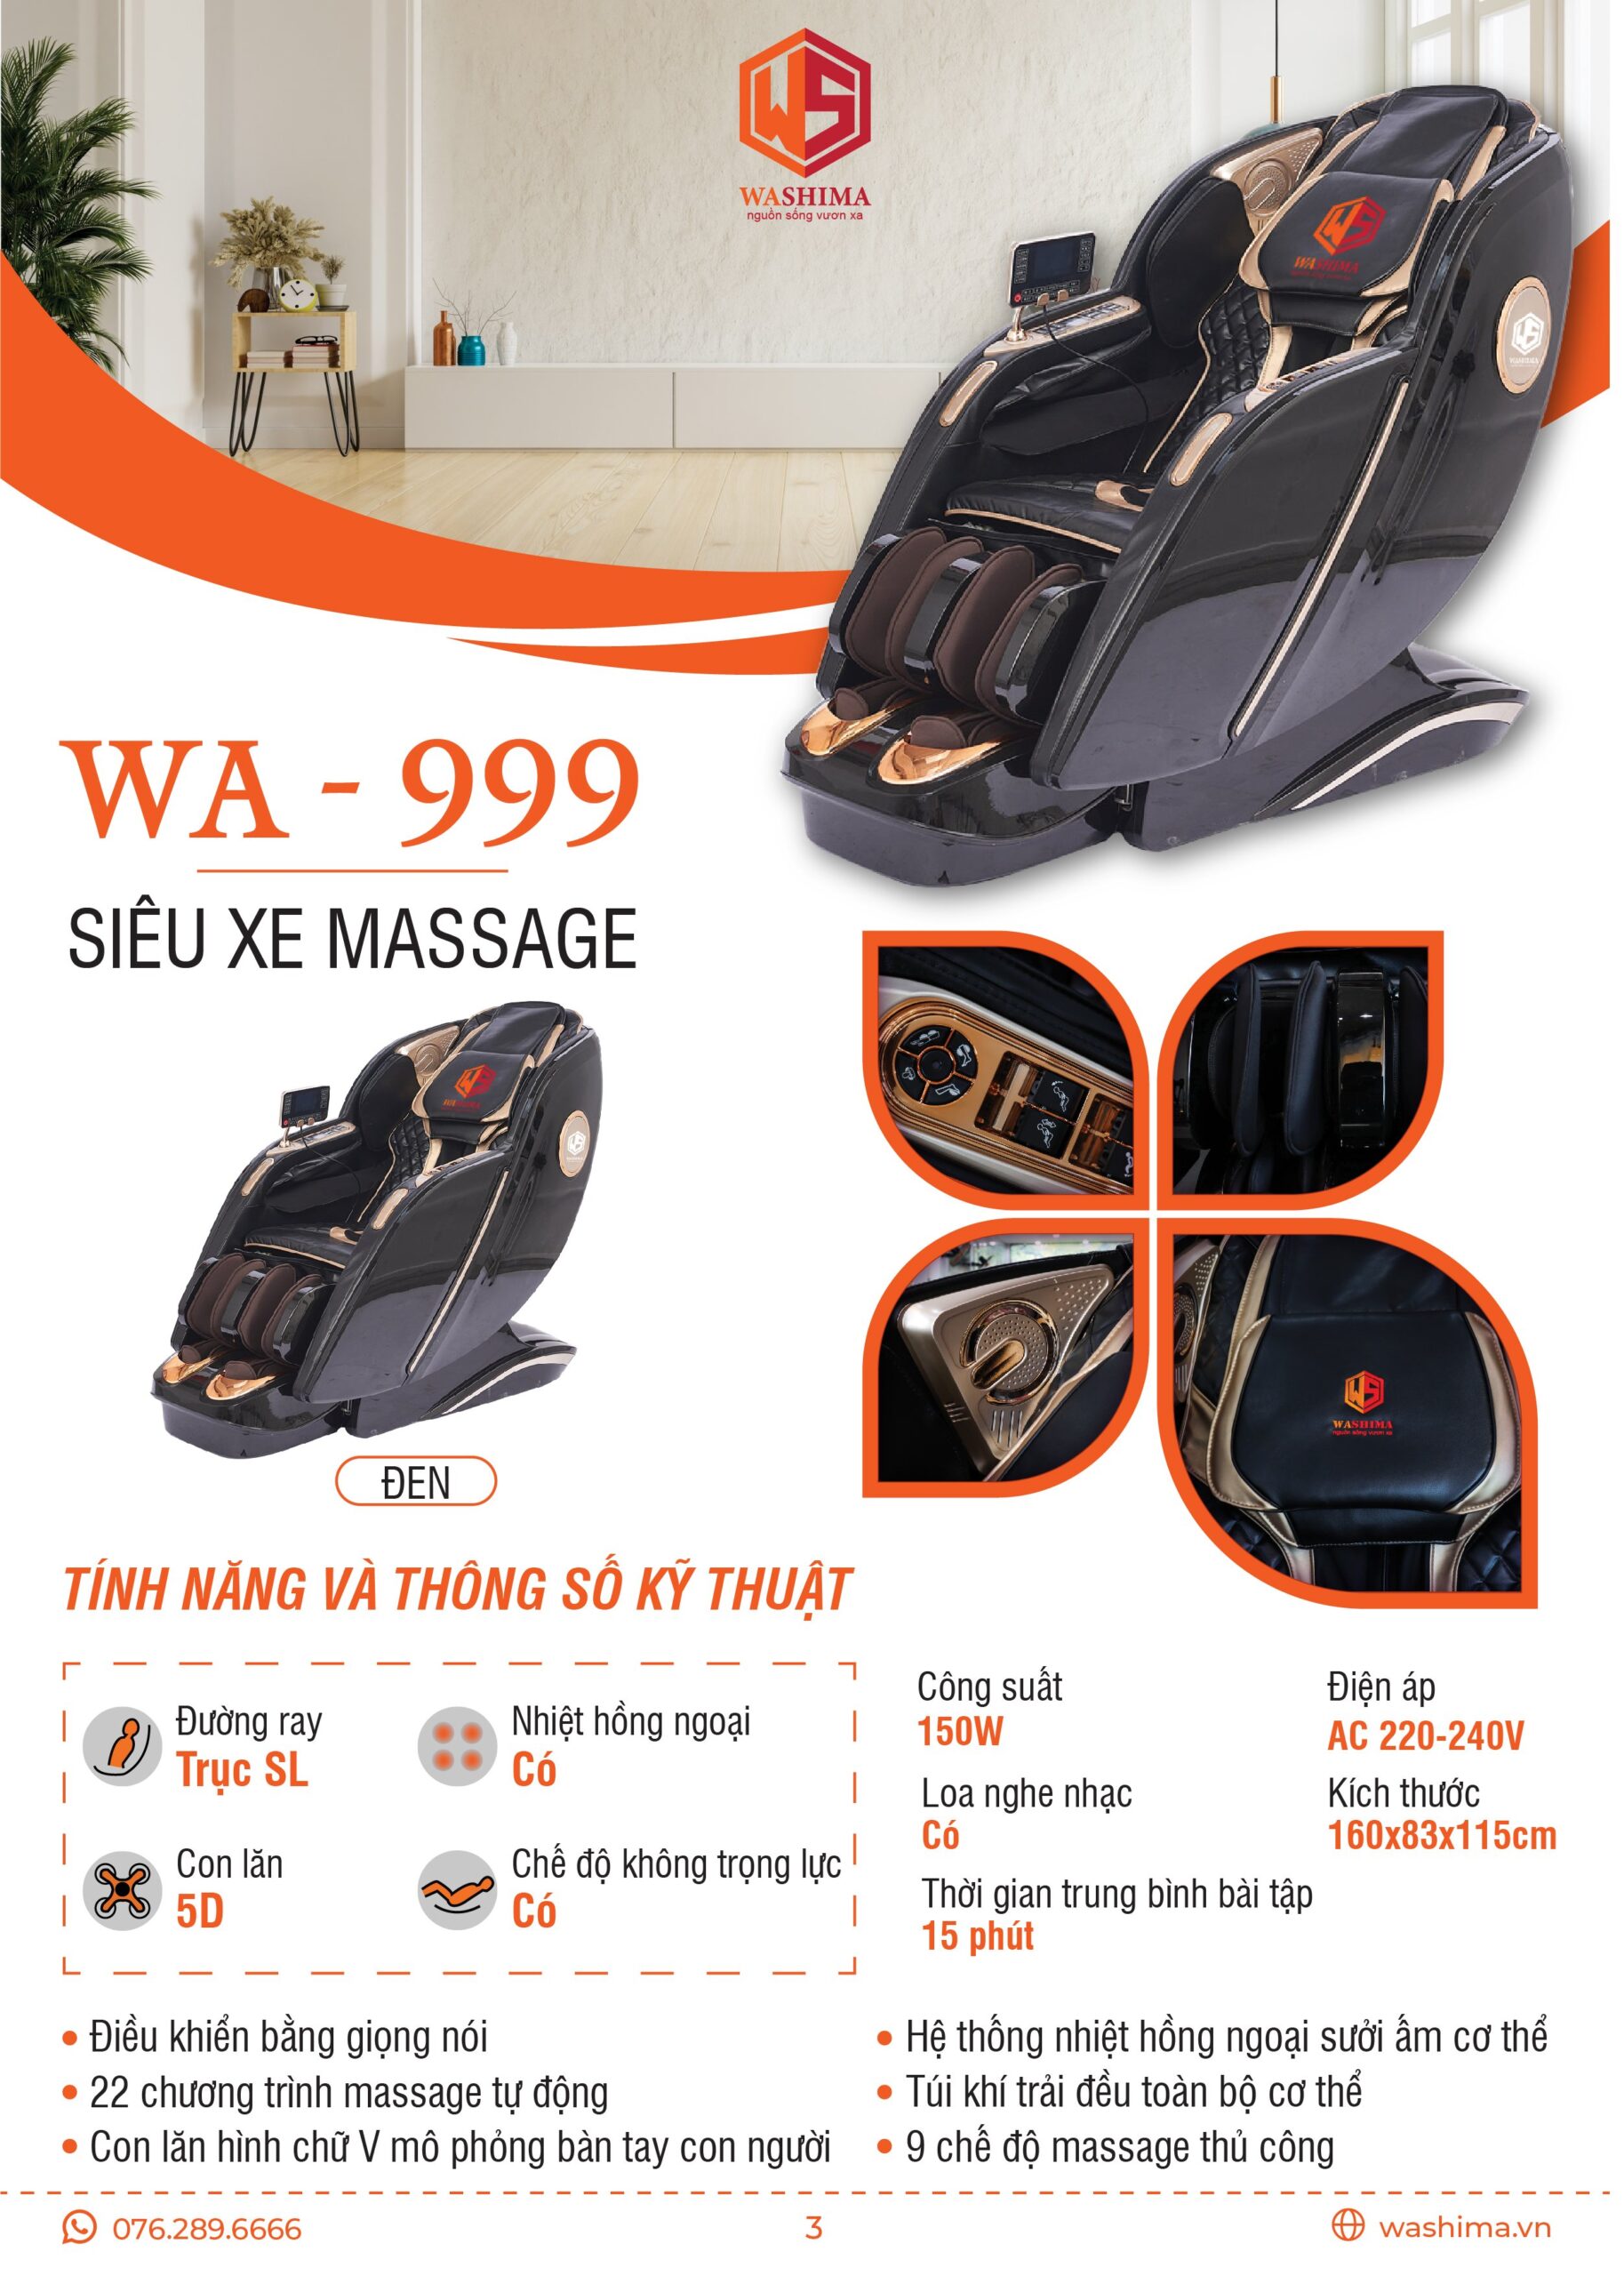 Thông số kỹ thuật chiếc siêu xe massage WA-999